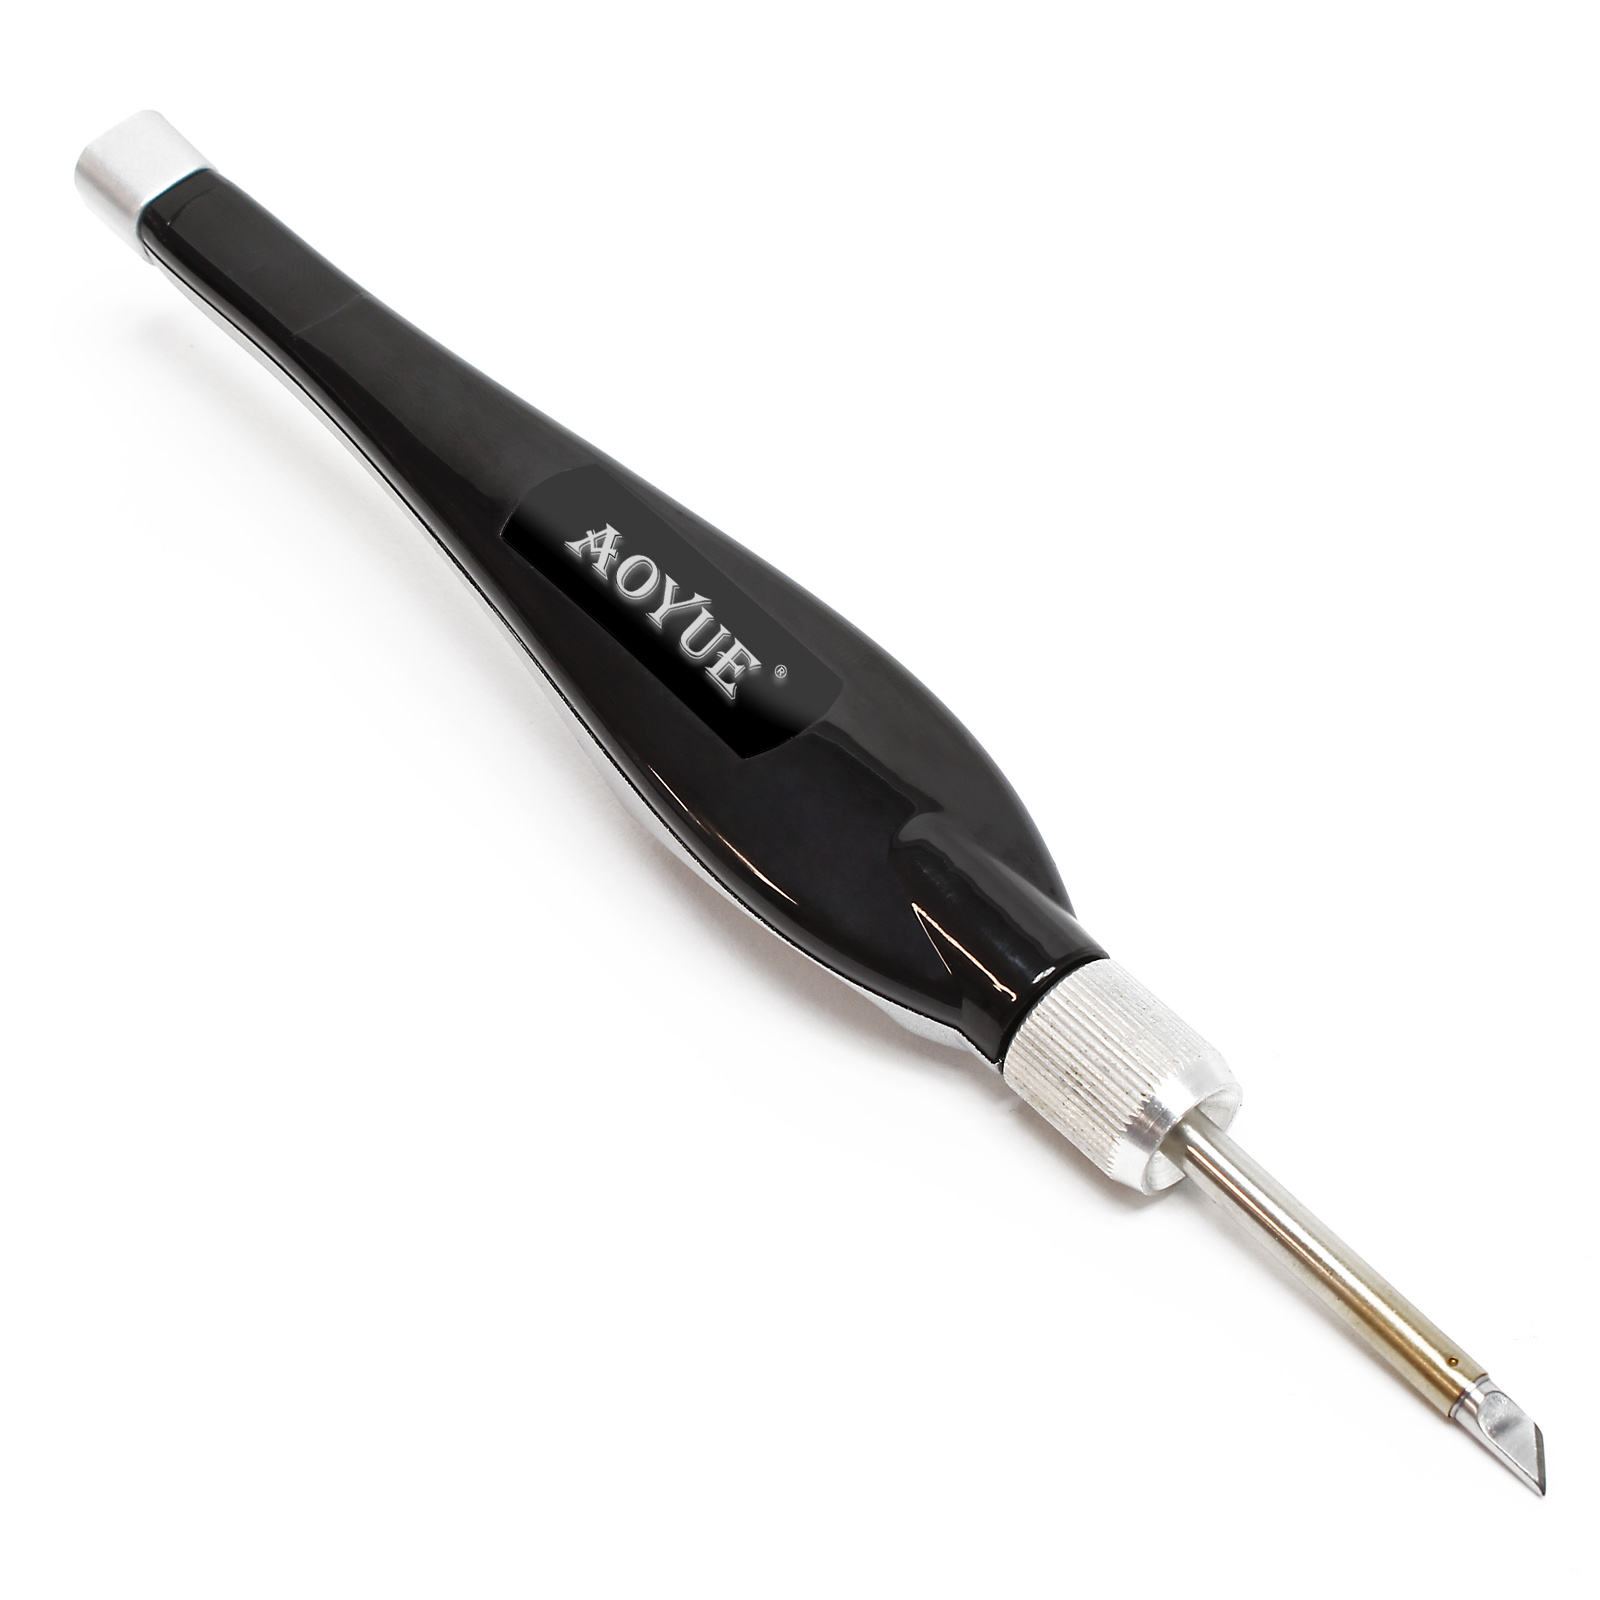 Aoyue 3212A Ritocco Pen 3D Correction pen